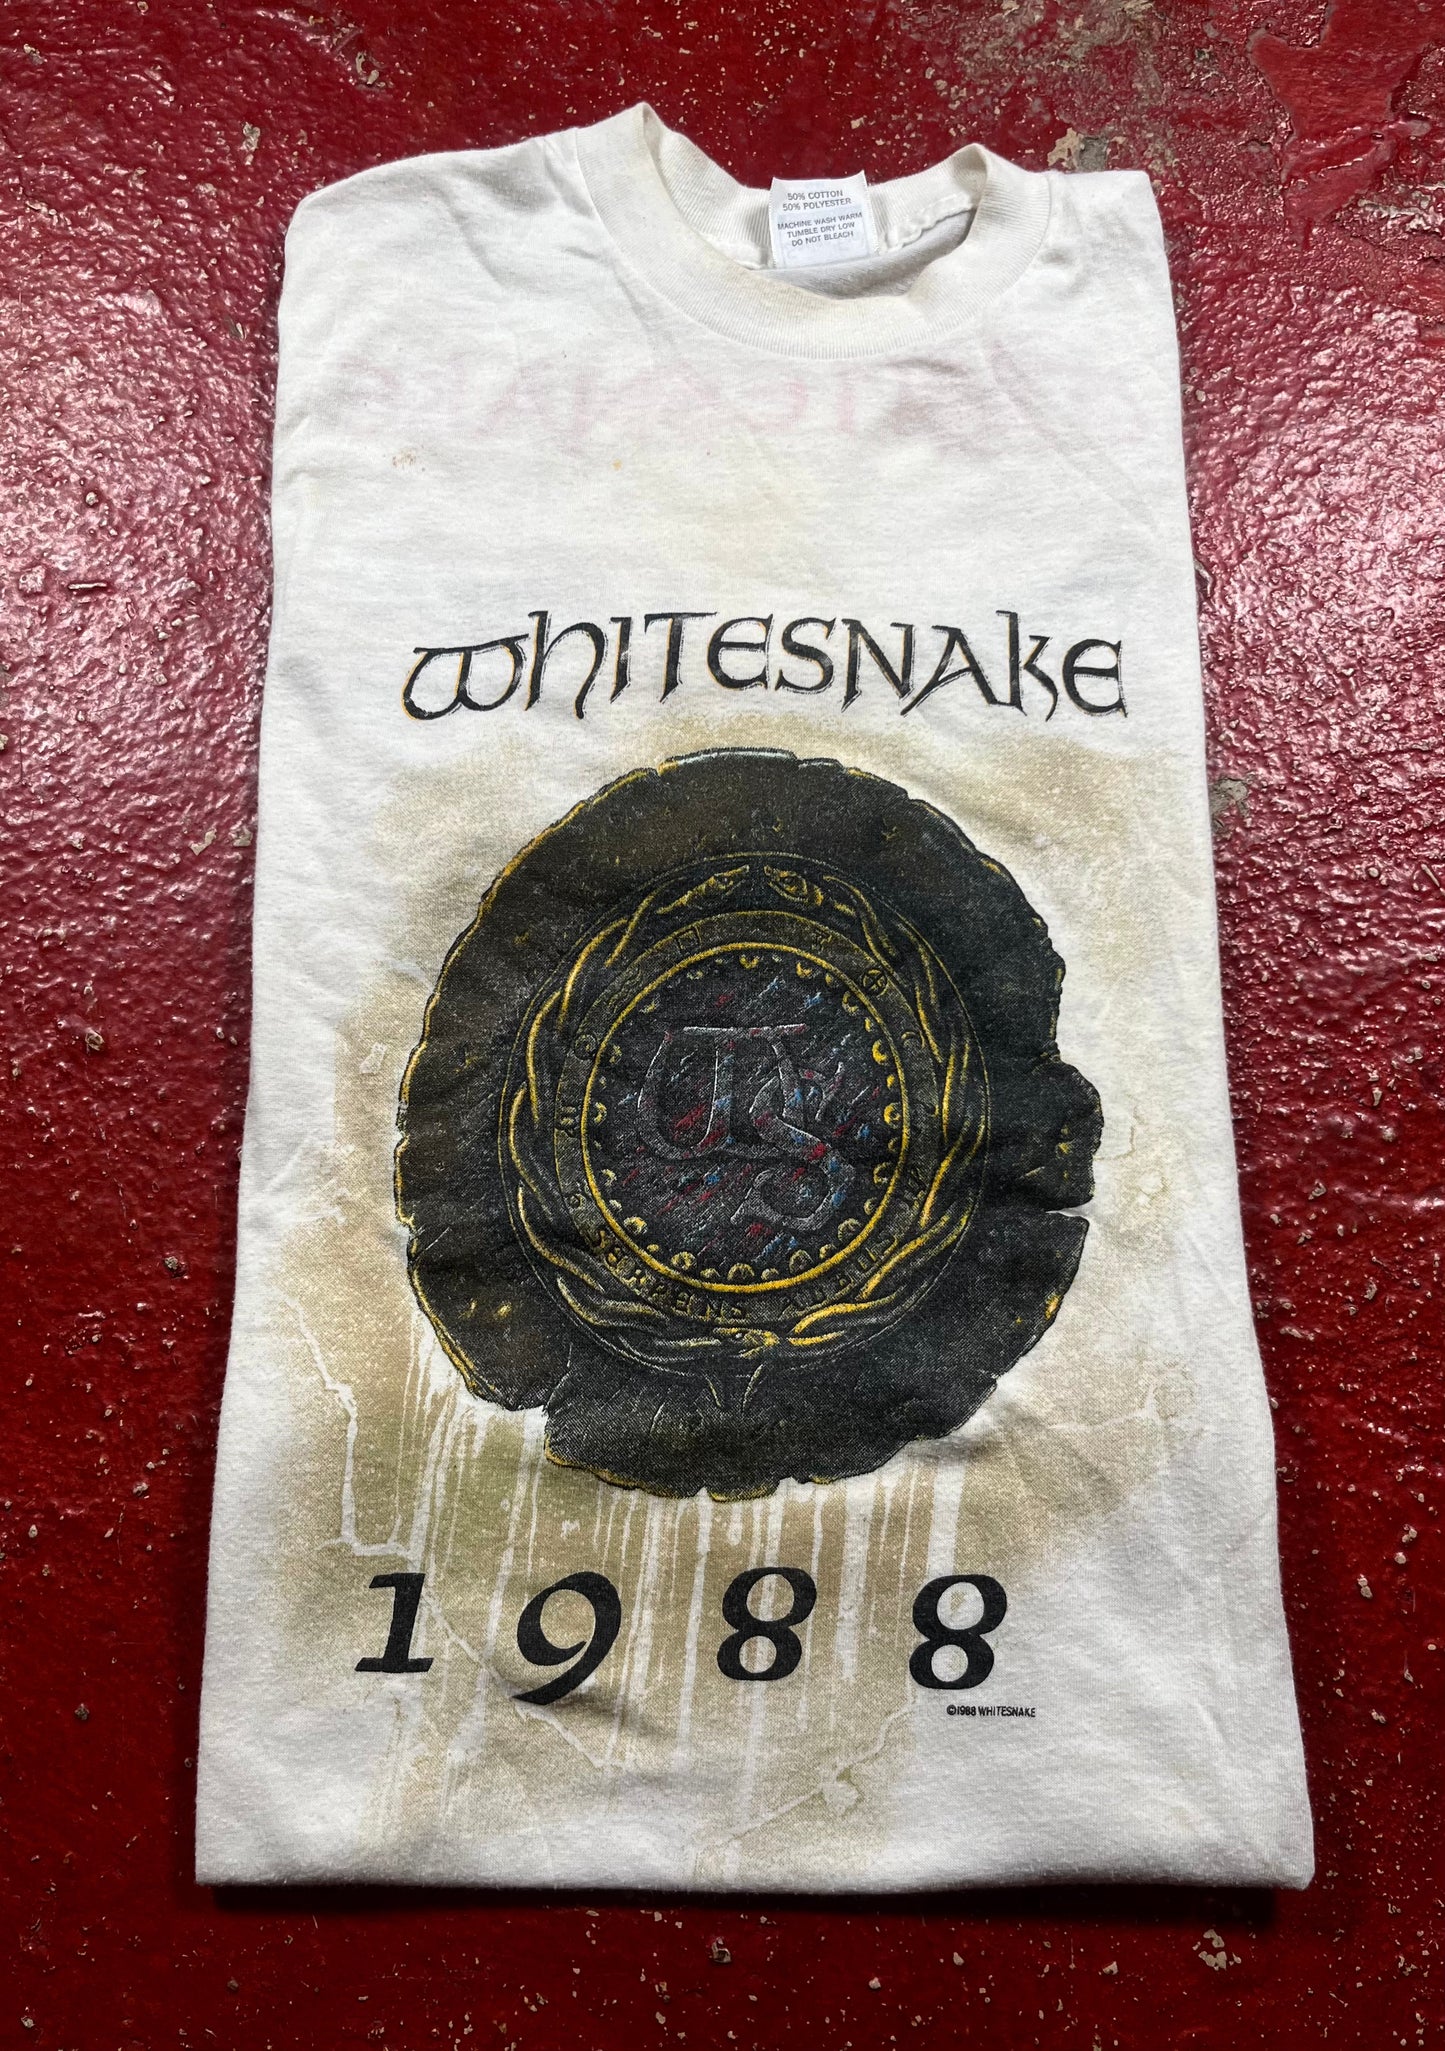 1988 WhiteSnake Tee